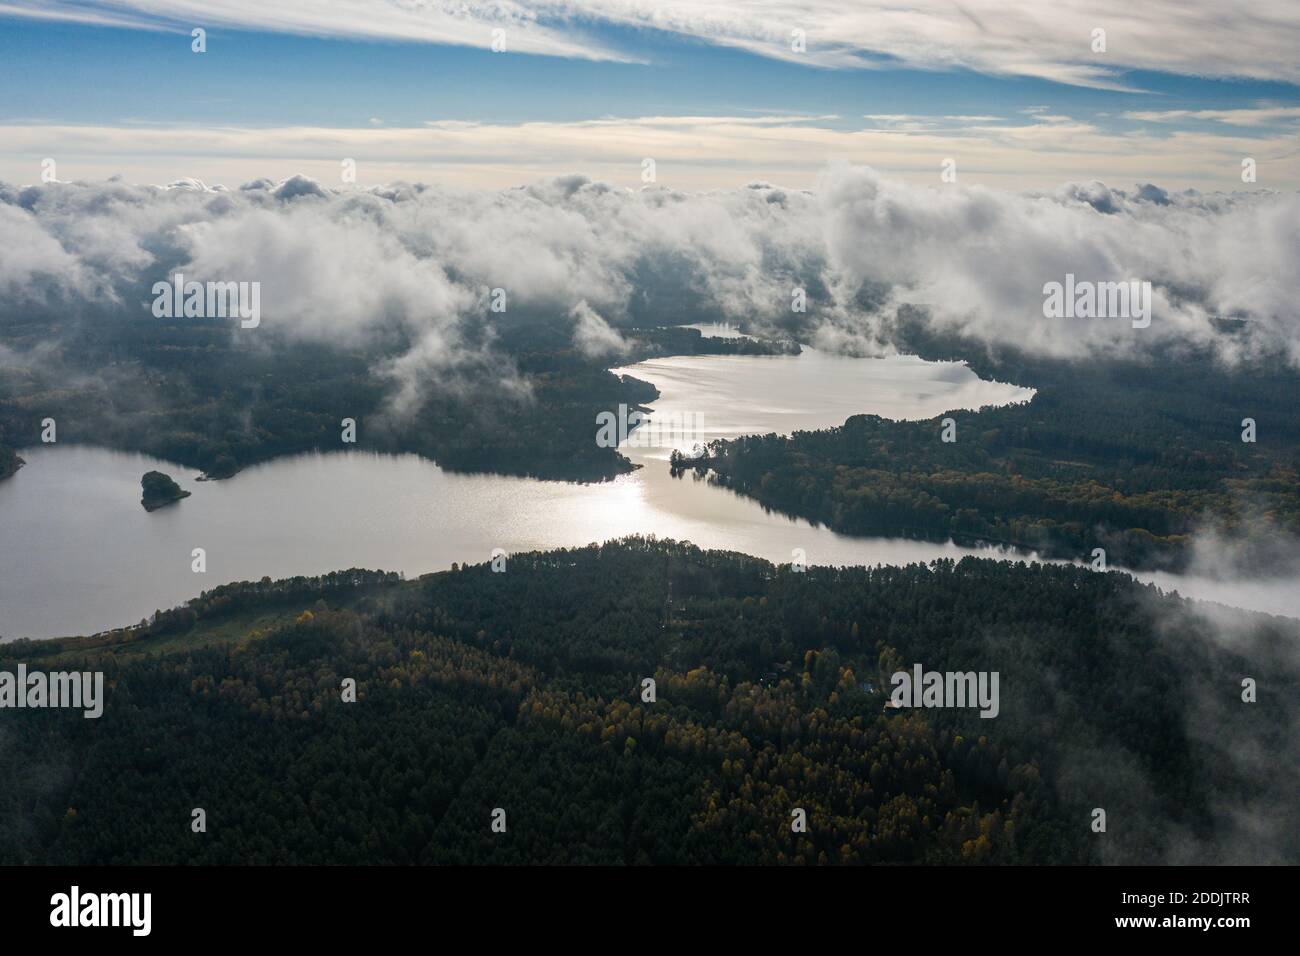 Vista aérea del lago y las nubes abajo Foto de stock